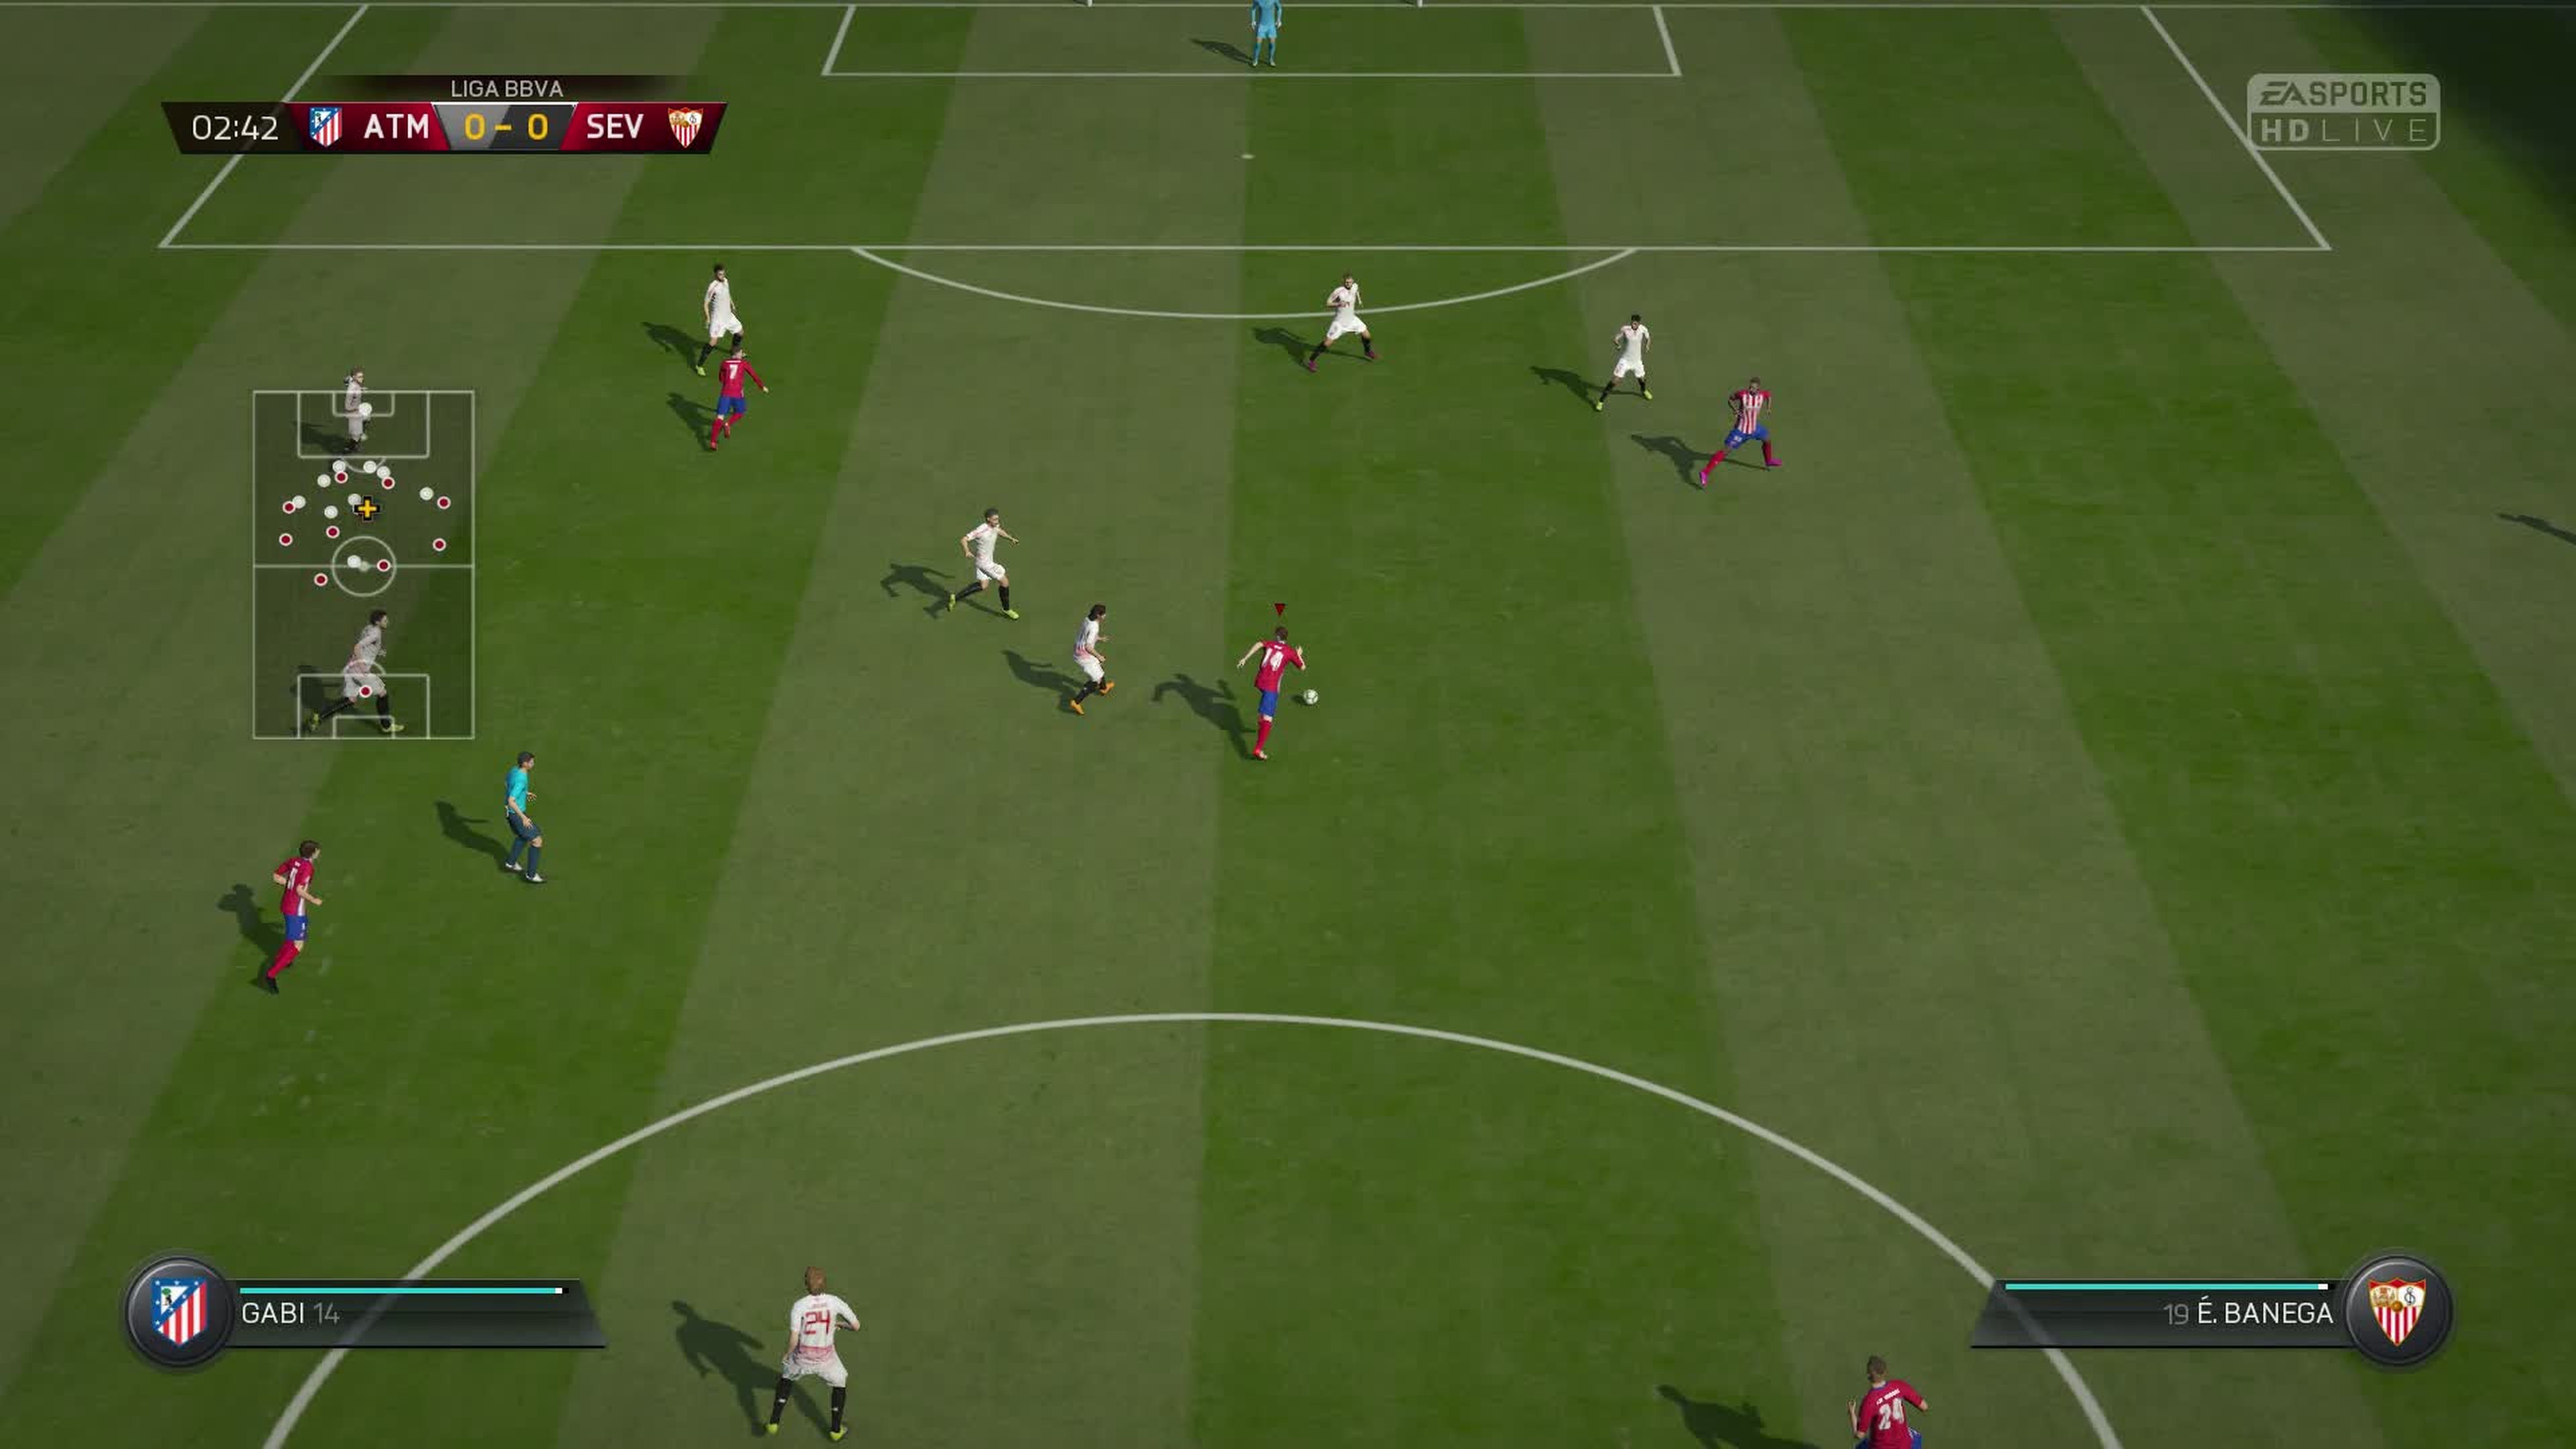 Análisis de FIFA 16 para PS4, Xbox One y PC